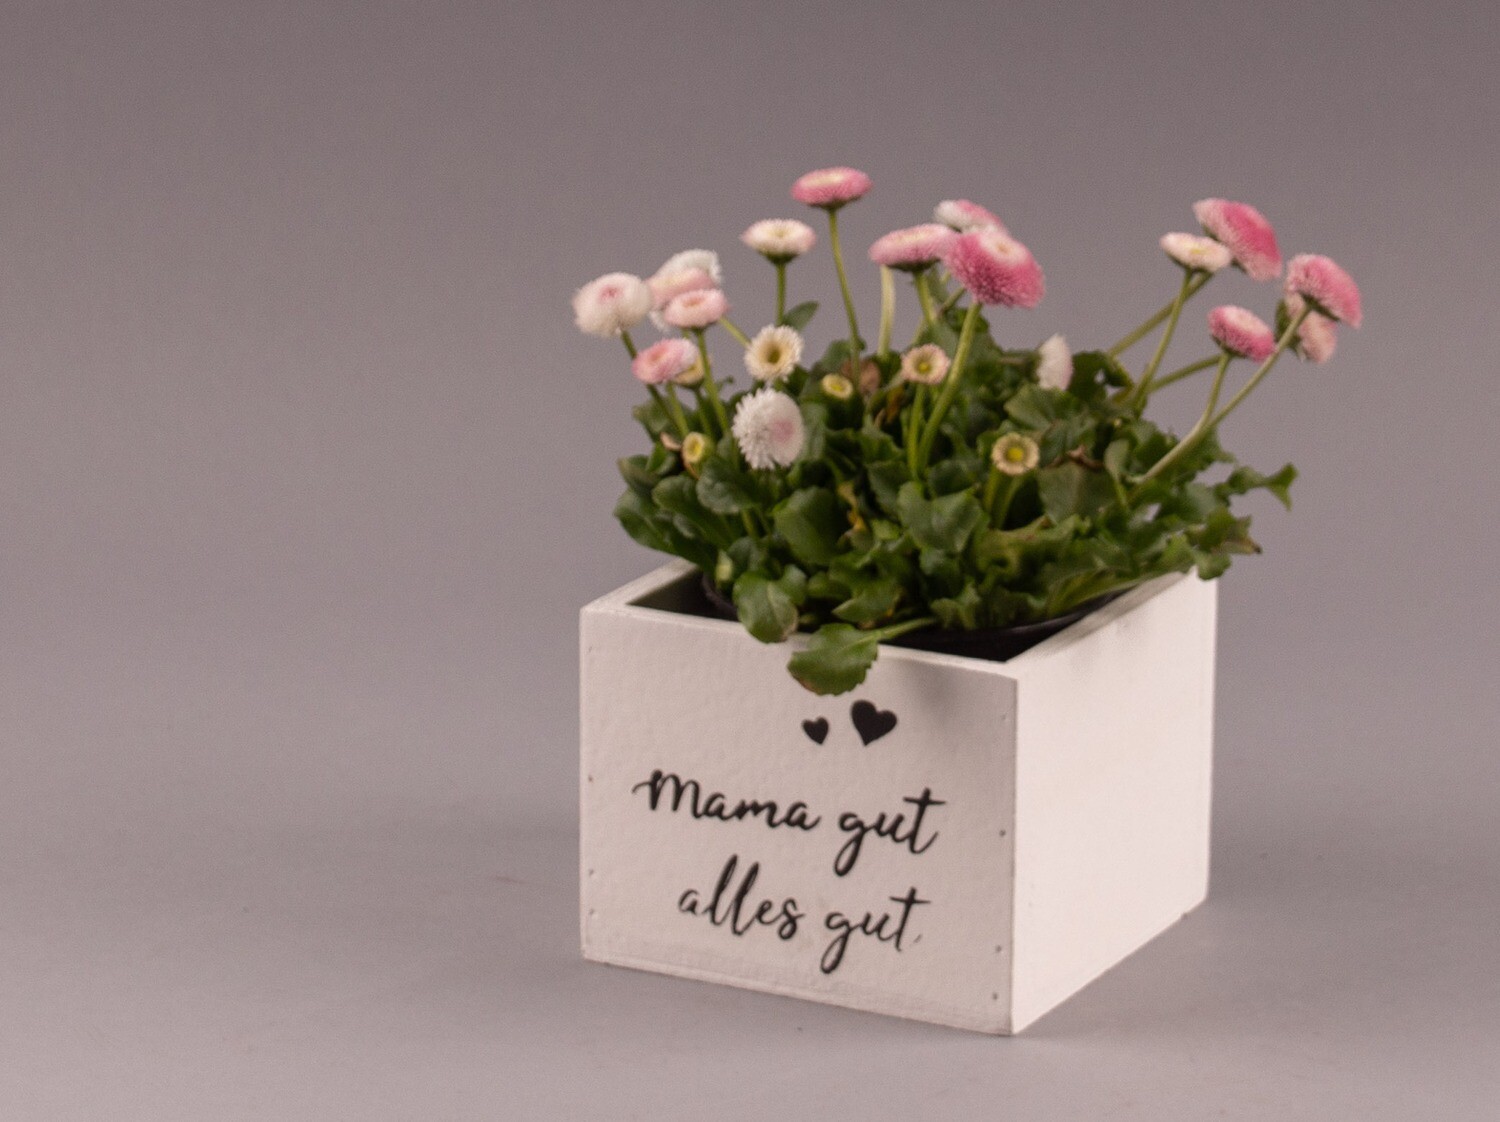 Blumenkistchen "Mama gut - alles gut"